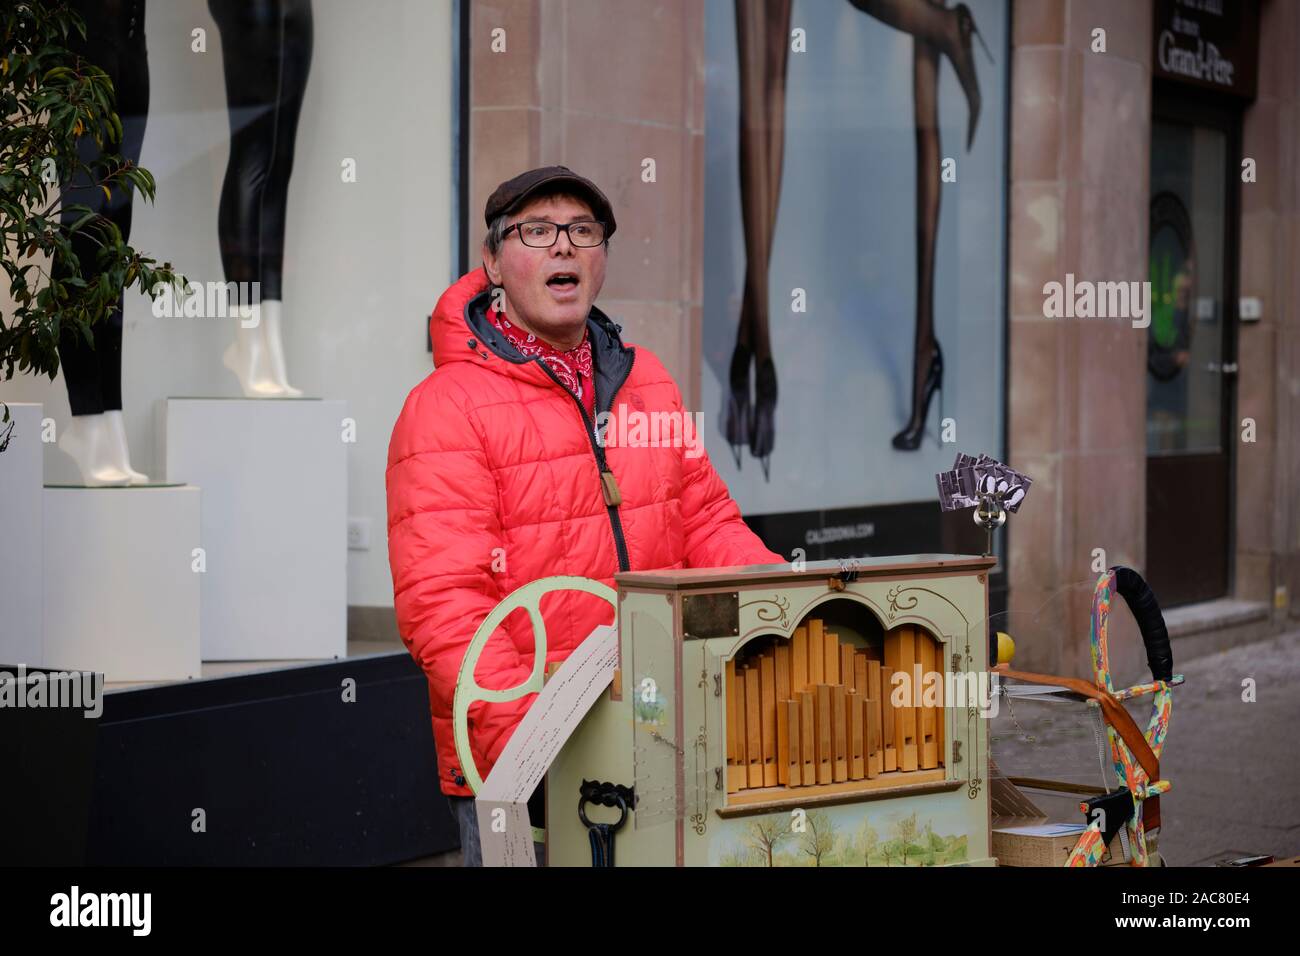 Orgue de Barbarie en tournant le volant de son instrument, vêtu de vêtements d'hiver, dans les rues de Strasbourg, France. Banque D'Images